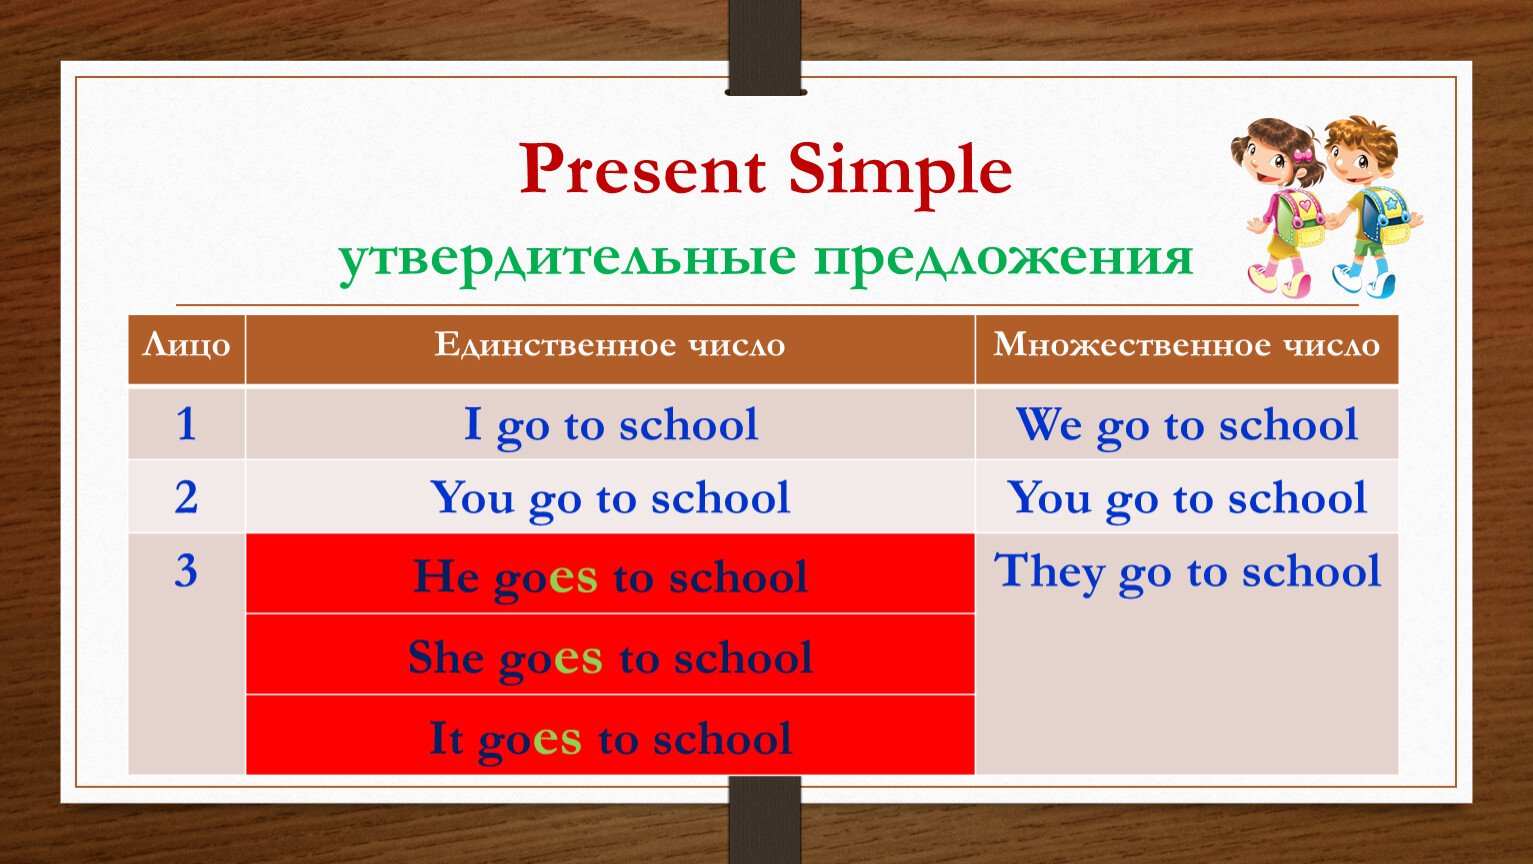 Present simple глаголы в 3 лице. Present simple утвердительные предложения. Present simple в английском языке. Презент Симпл утвердительные предложения. Present simple составление предложений.